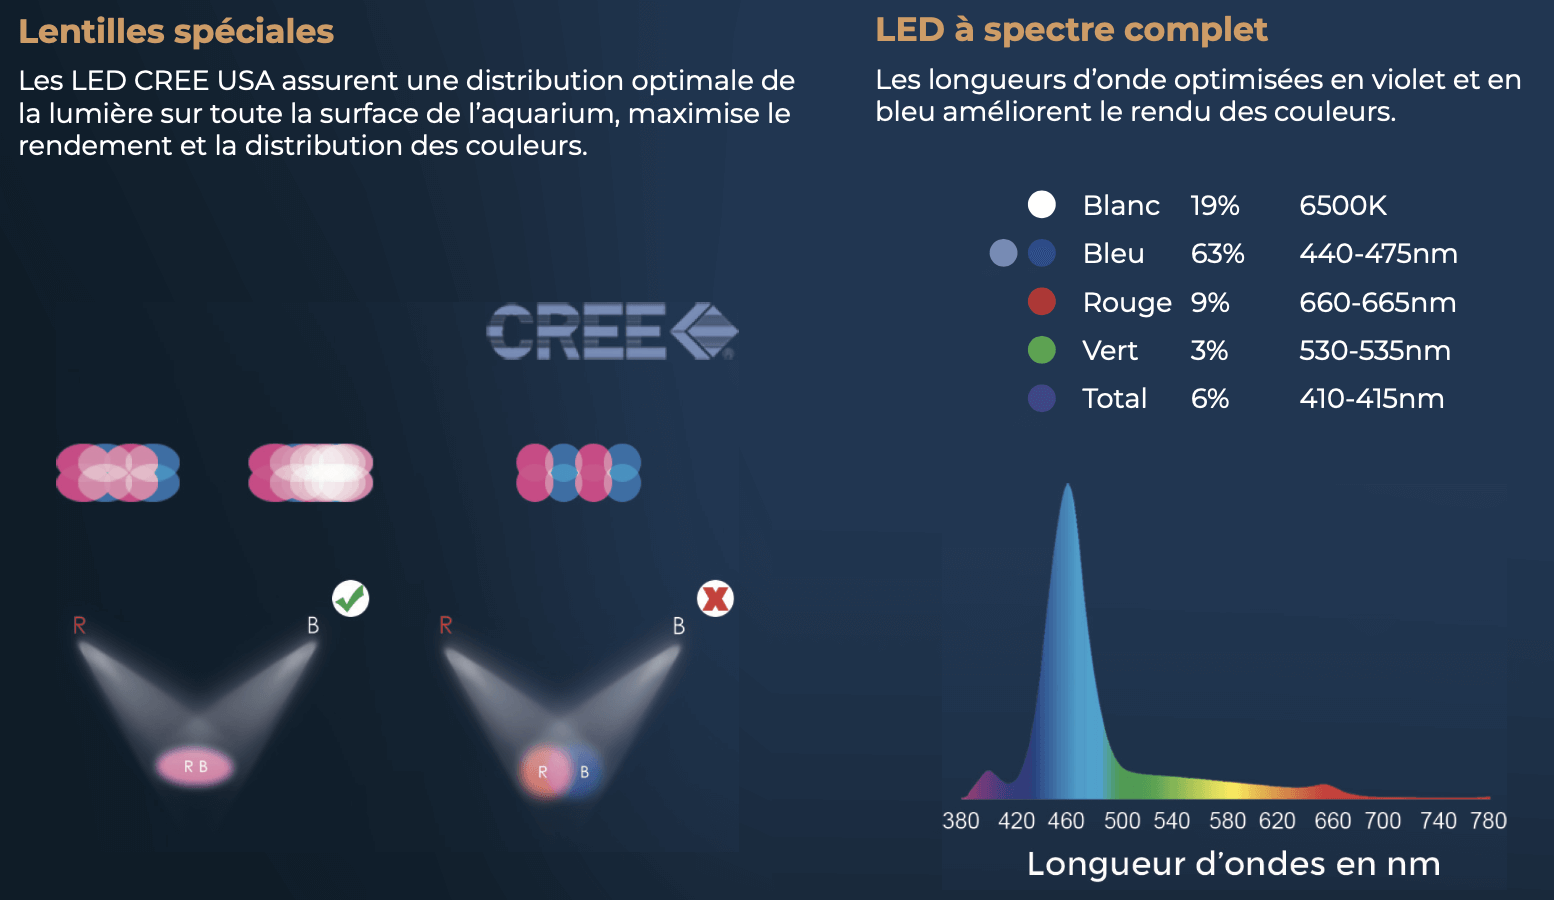 Les LED CREE USA assurent une distribution optimale de la lumière sur toute la surface de l’aquarium, maximise le rendement et la distribution des couleurs.